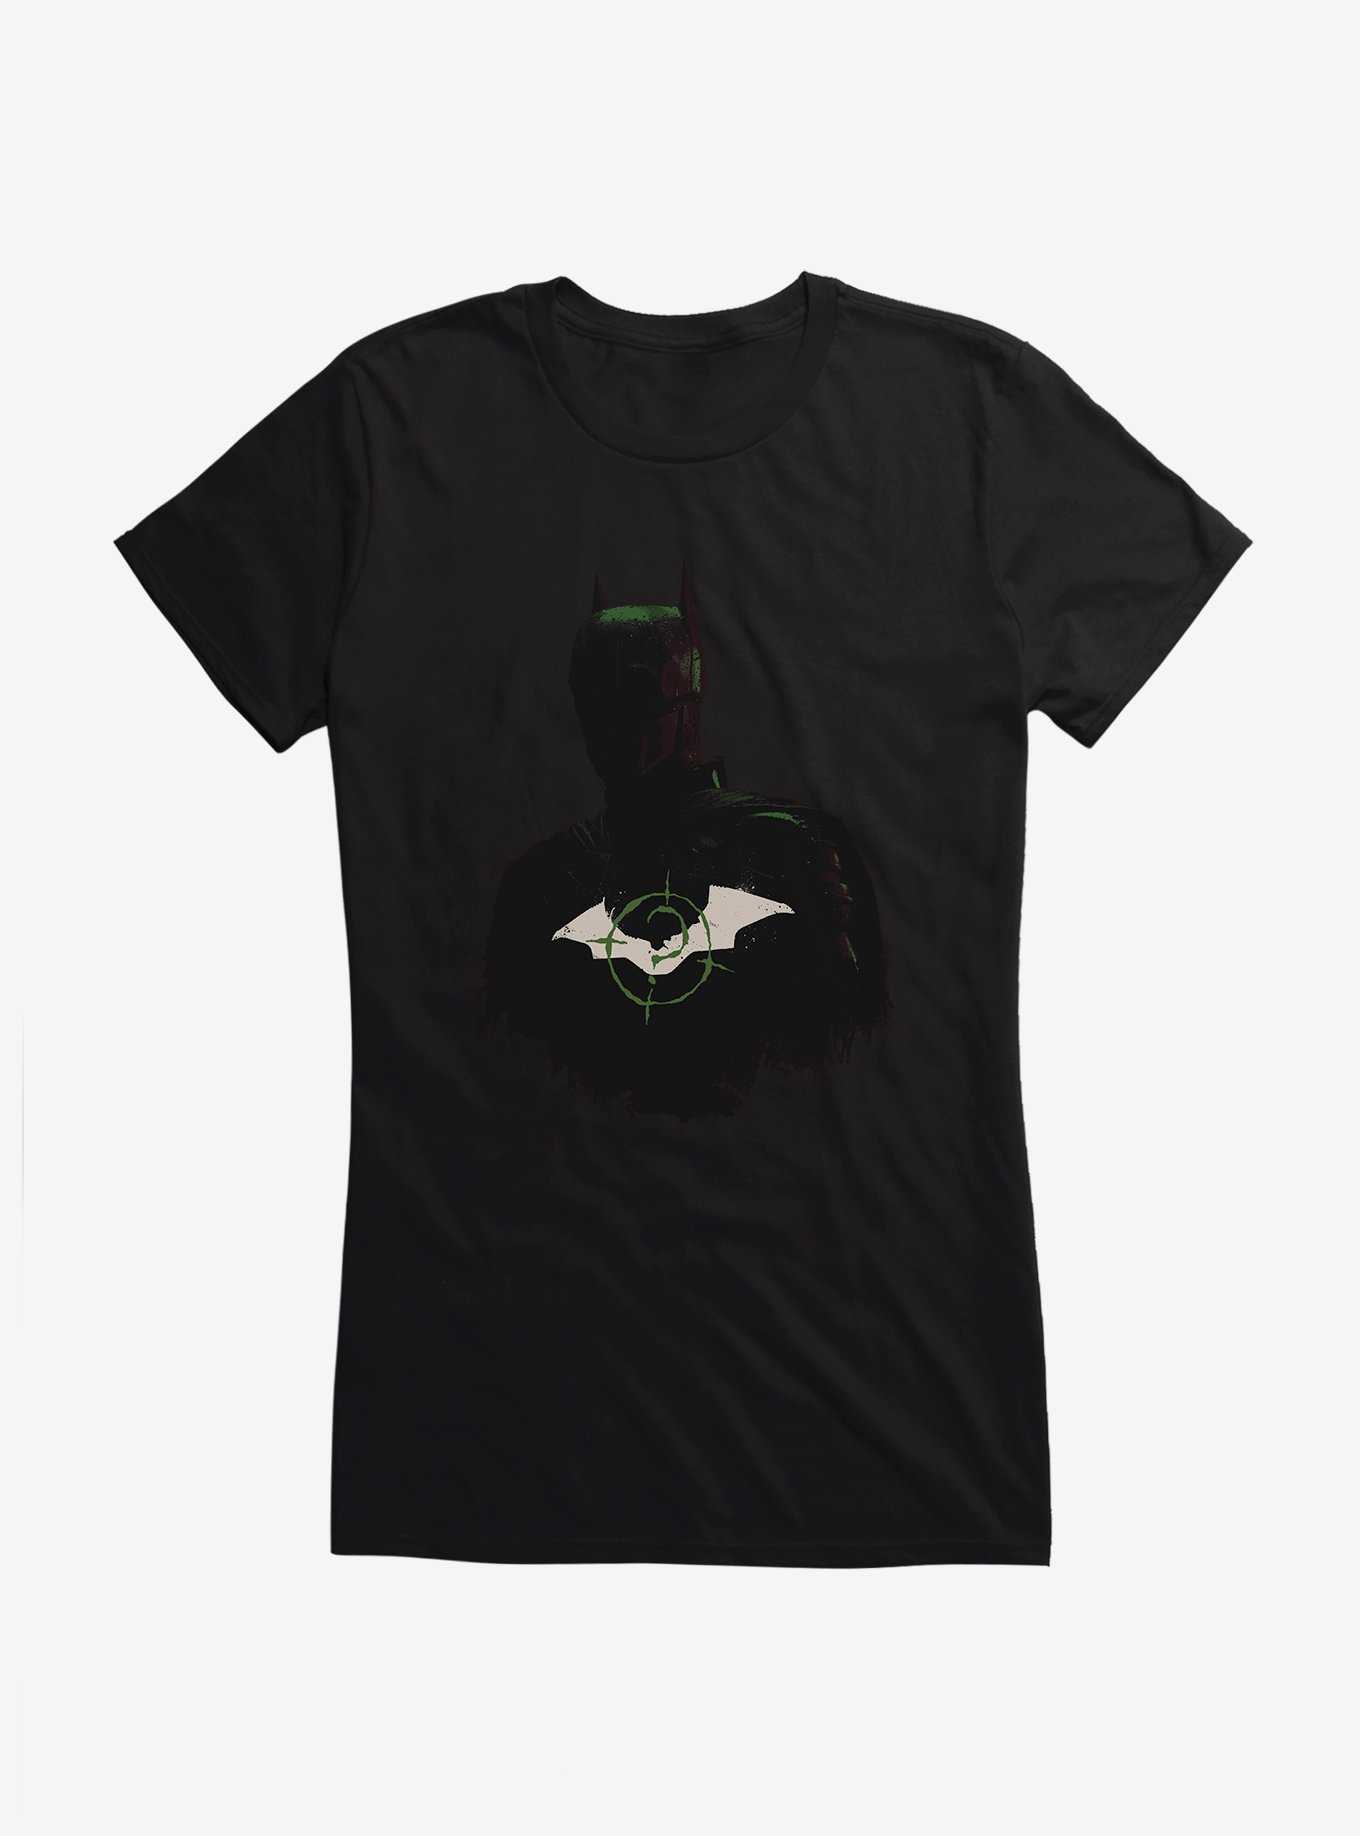 DC Comics The Batman Bat Target Girl's T-Shirt, , hi-res